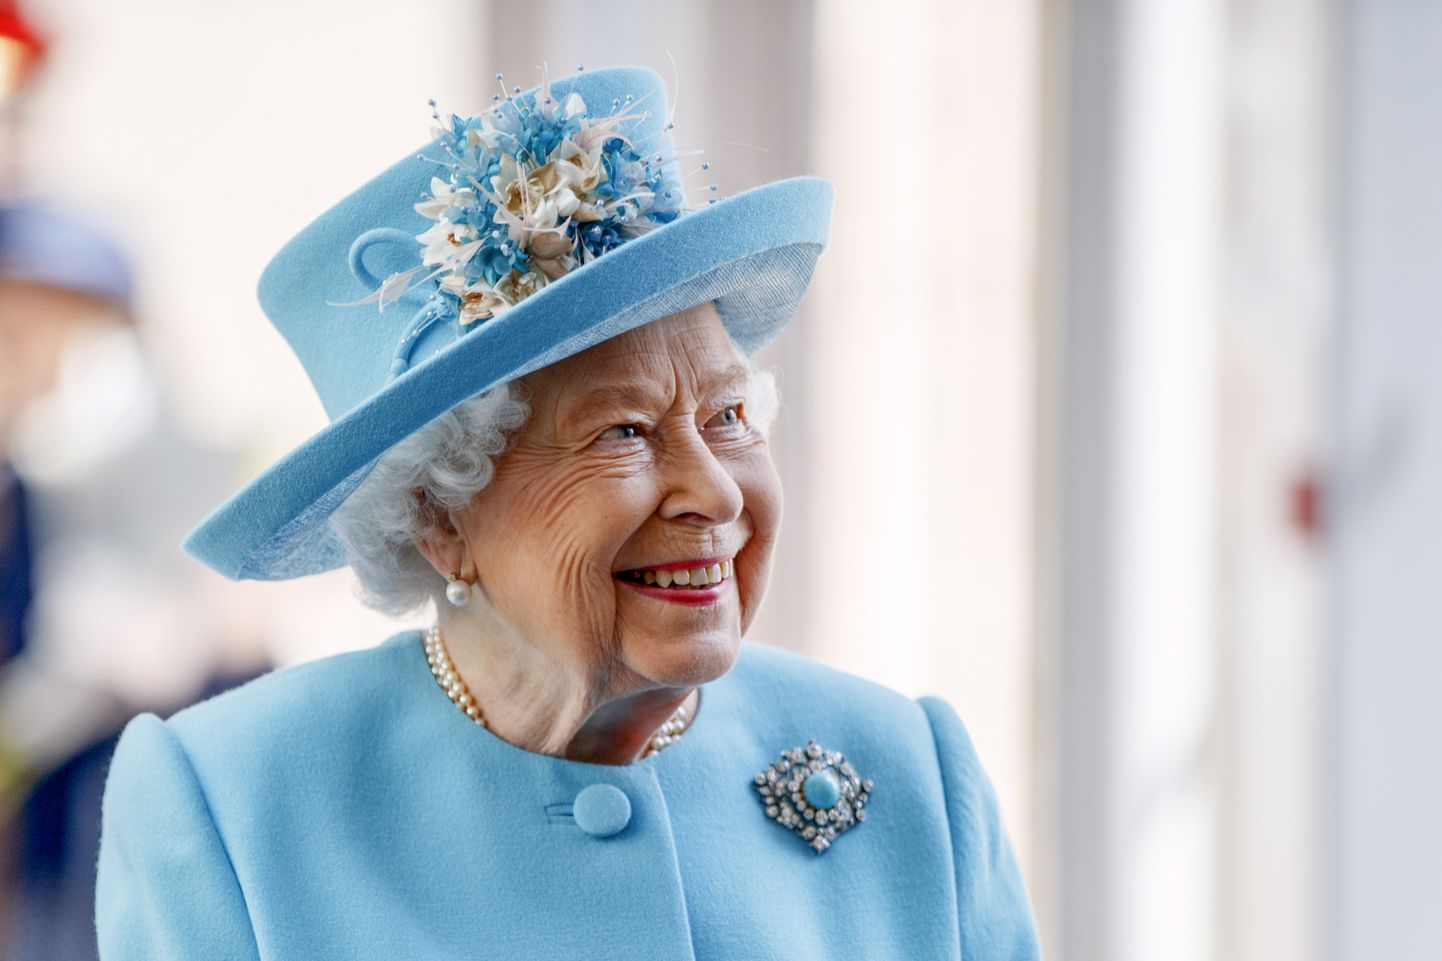 Briti kuninganna Elizabeth II külastas 23. mail 2019 Londoni Heathrow lennujaama